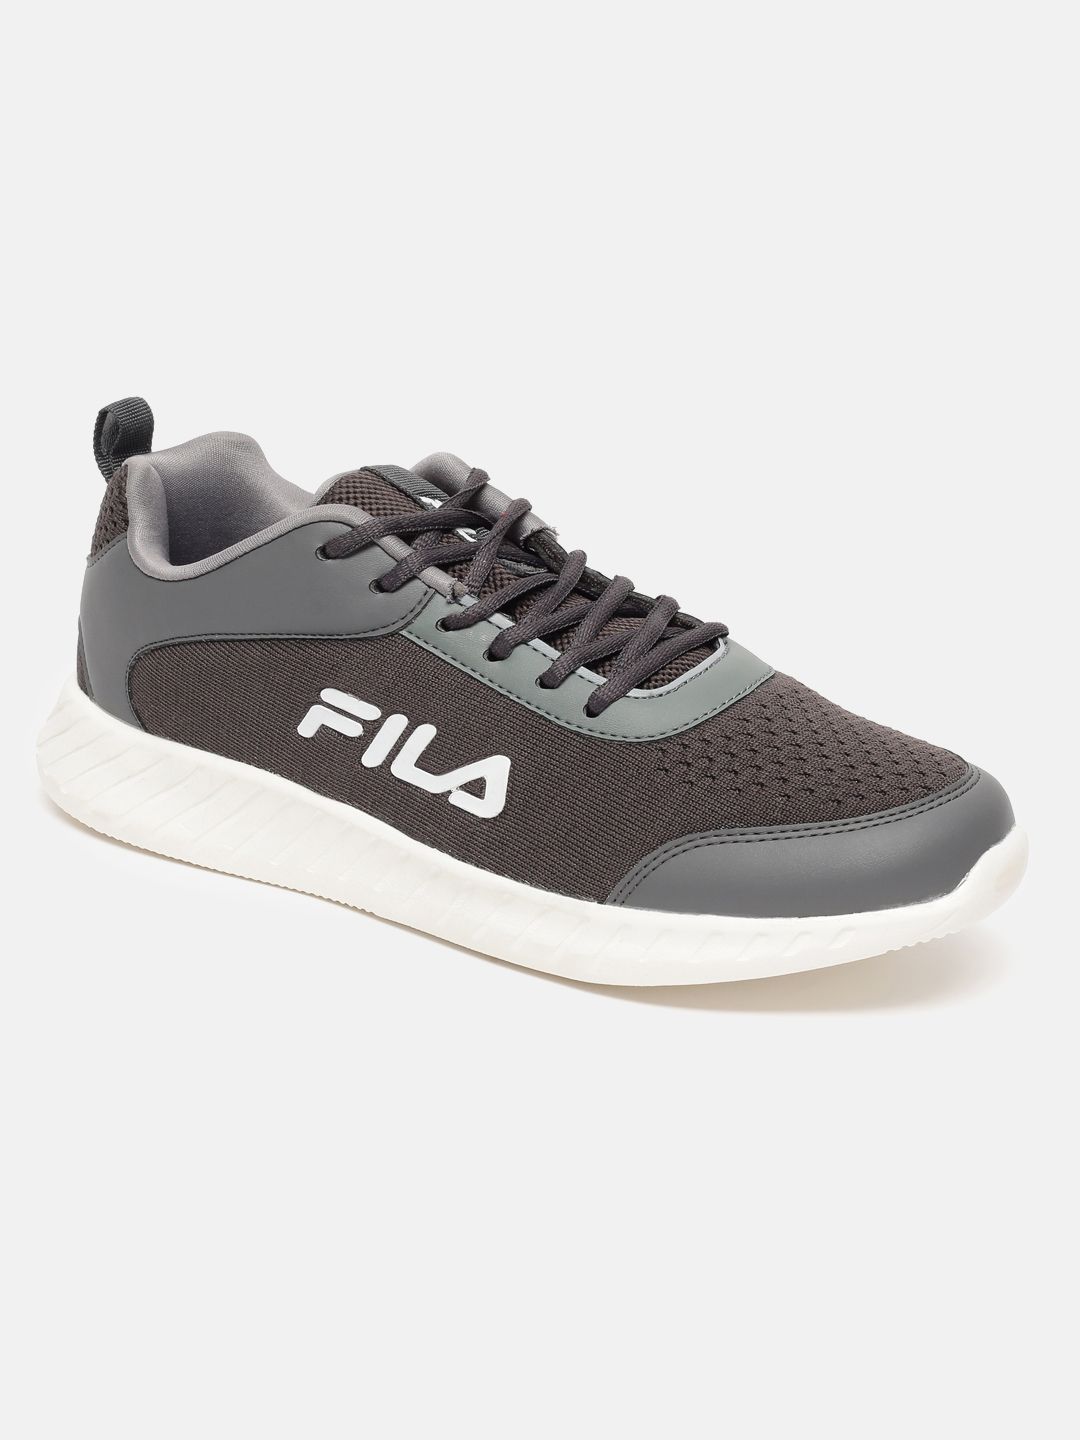 Buy FILA Grey Men Pecos Motorsport Shoes online